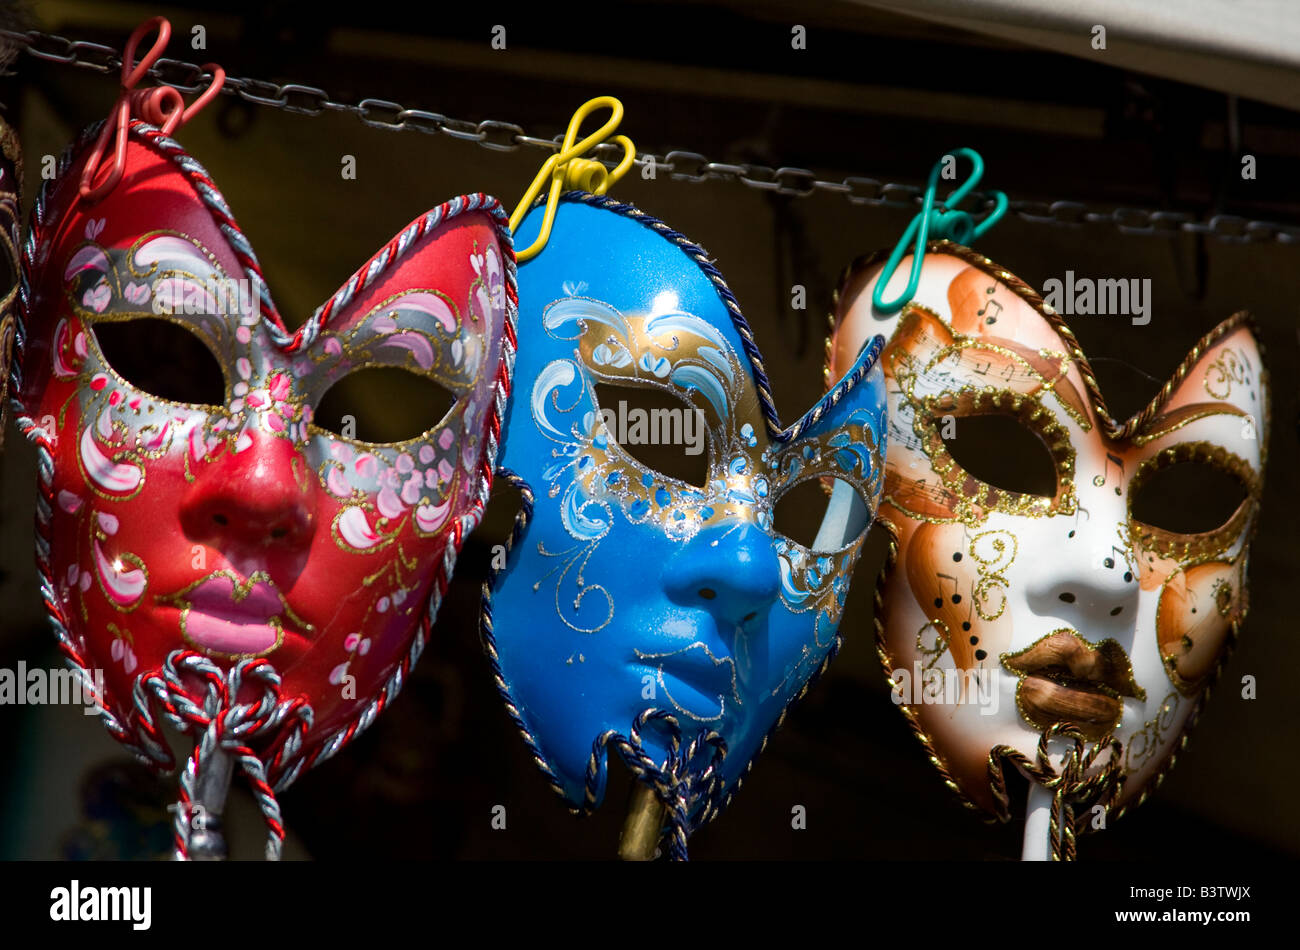 L'Europe, Italie, Venise. Affichage des masques de carnaval vénitien coloré. Banque D'Images